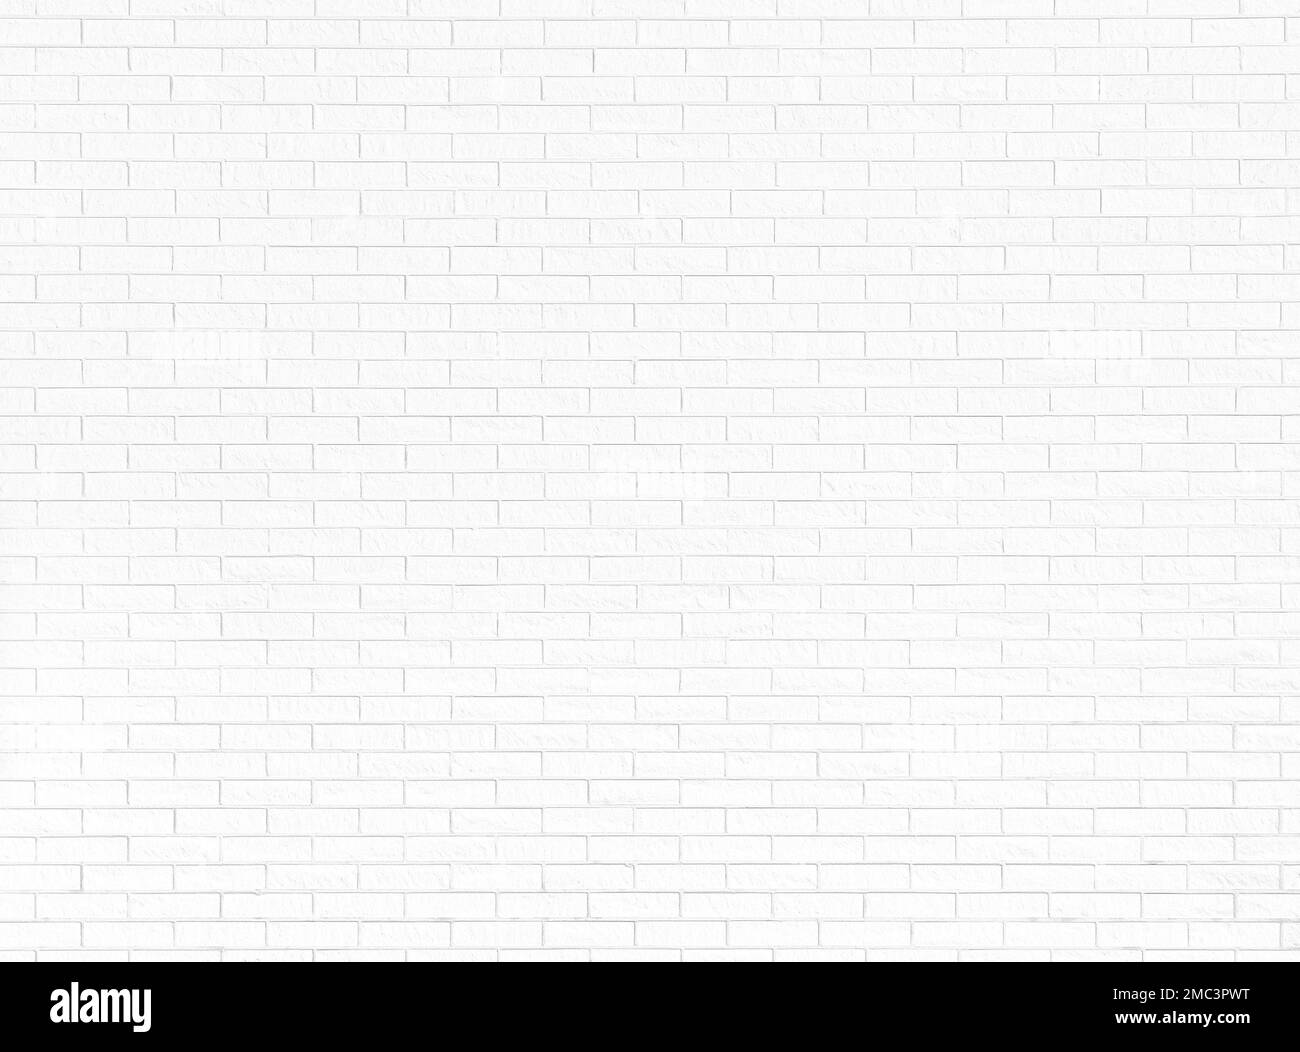 Vista frontale di una nuova e pulita parete di mattoni bianchi. Luminoso sfondo a trama full frame ad alta risoluzione in bianco e nero. Spazio di copia. Foto Stock